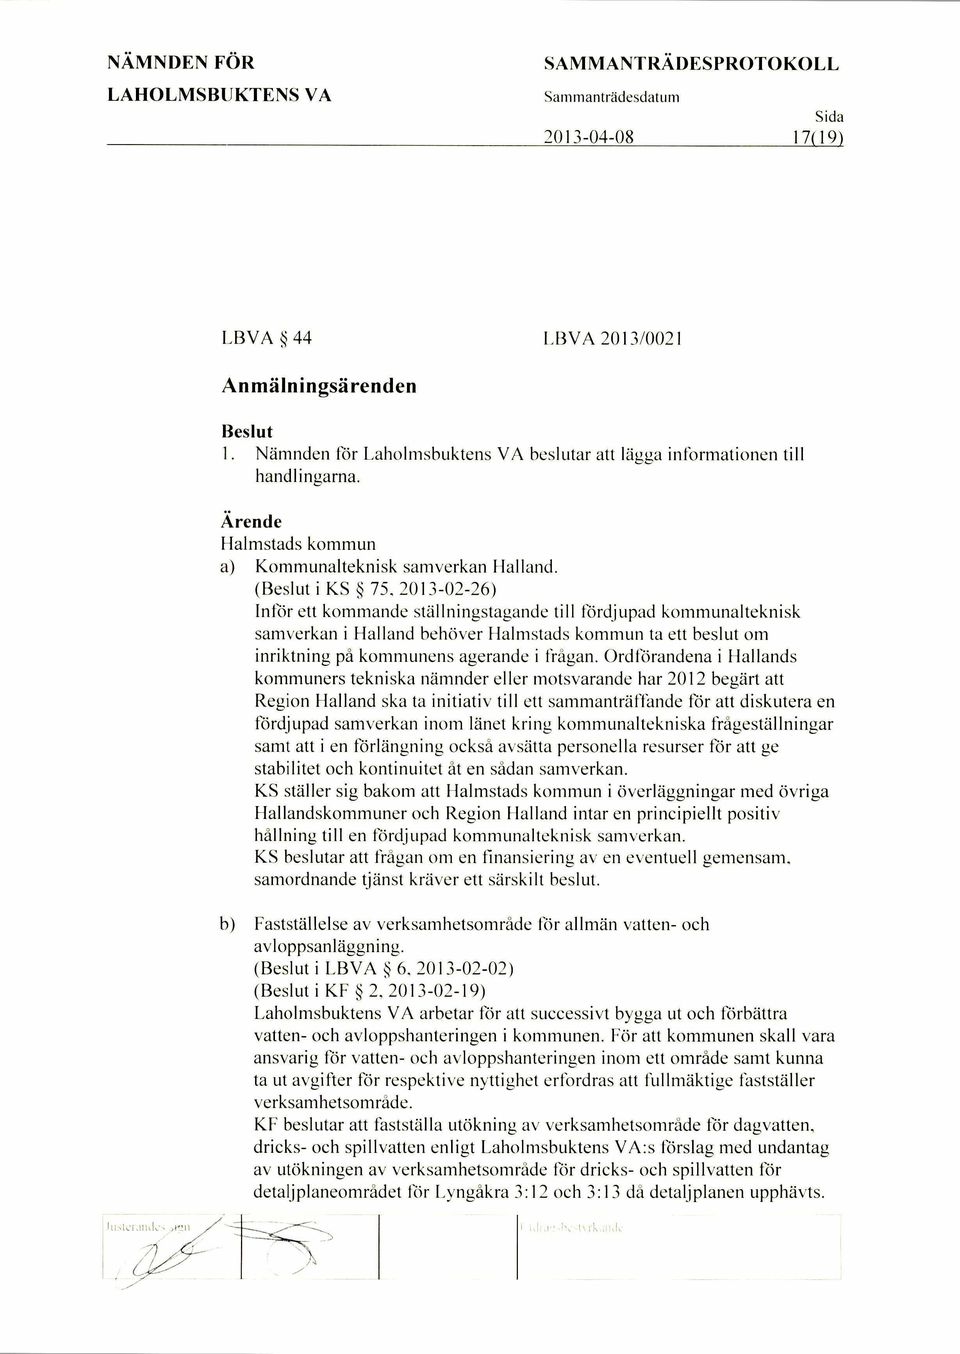 Ordforandena i Hallands kommuners tekniska namnder eller motsvarande har 2012 begart att Region Halland ska ta initiativ till ett sammantraltande for att diskutera en fordjupad samverkan inom lanet